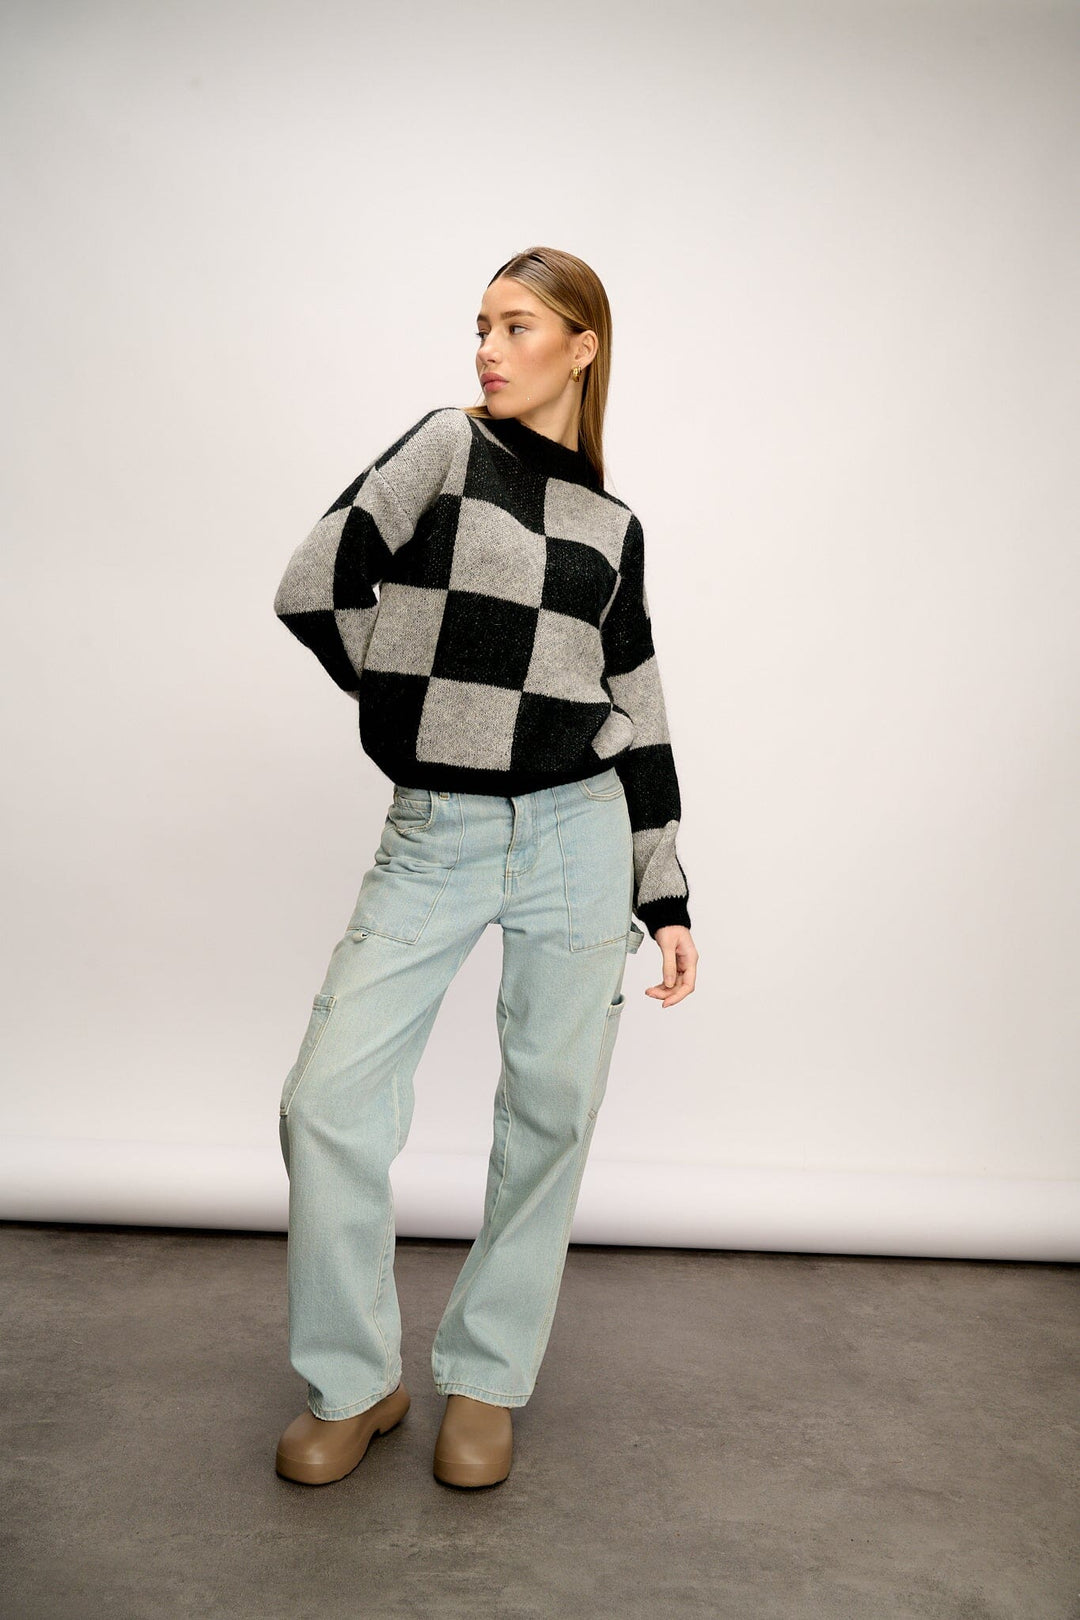 Noella - Kiana Knit Sweater - Black/Grey Strikbluser 